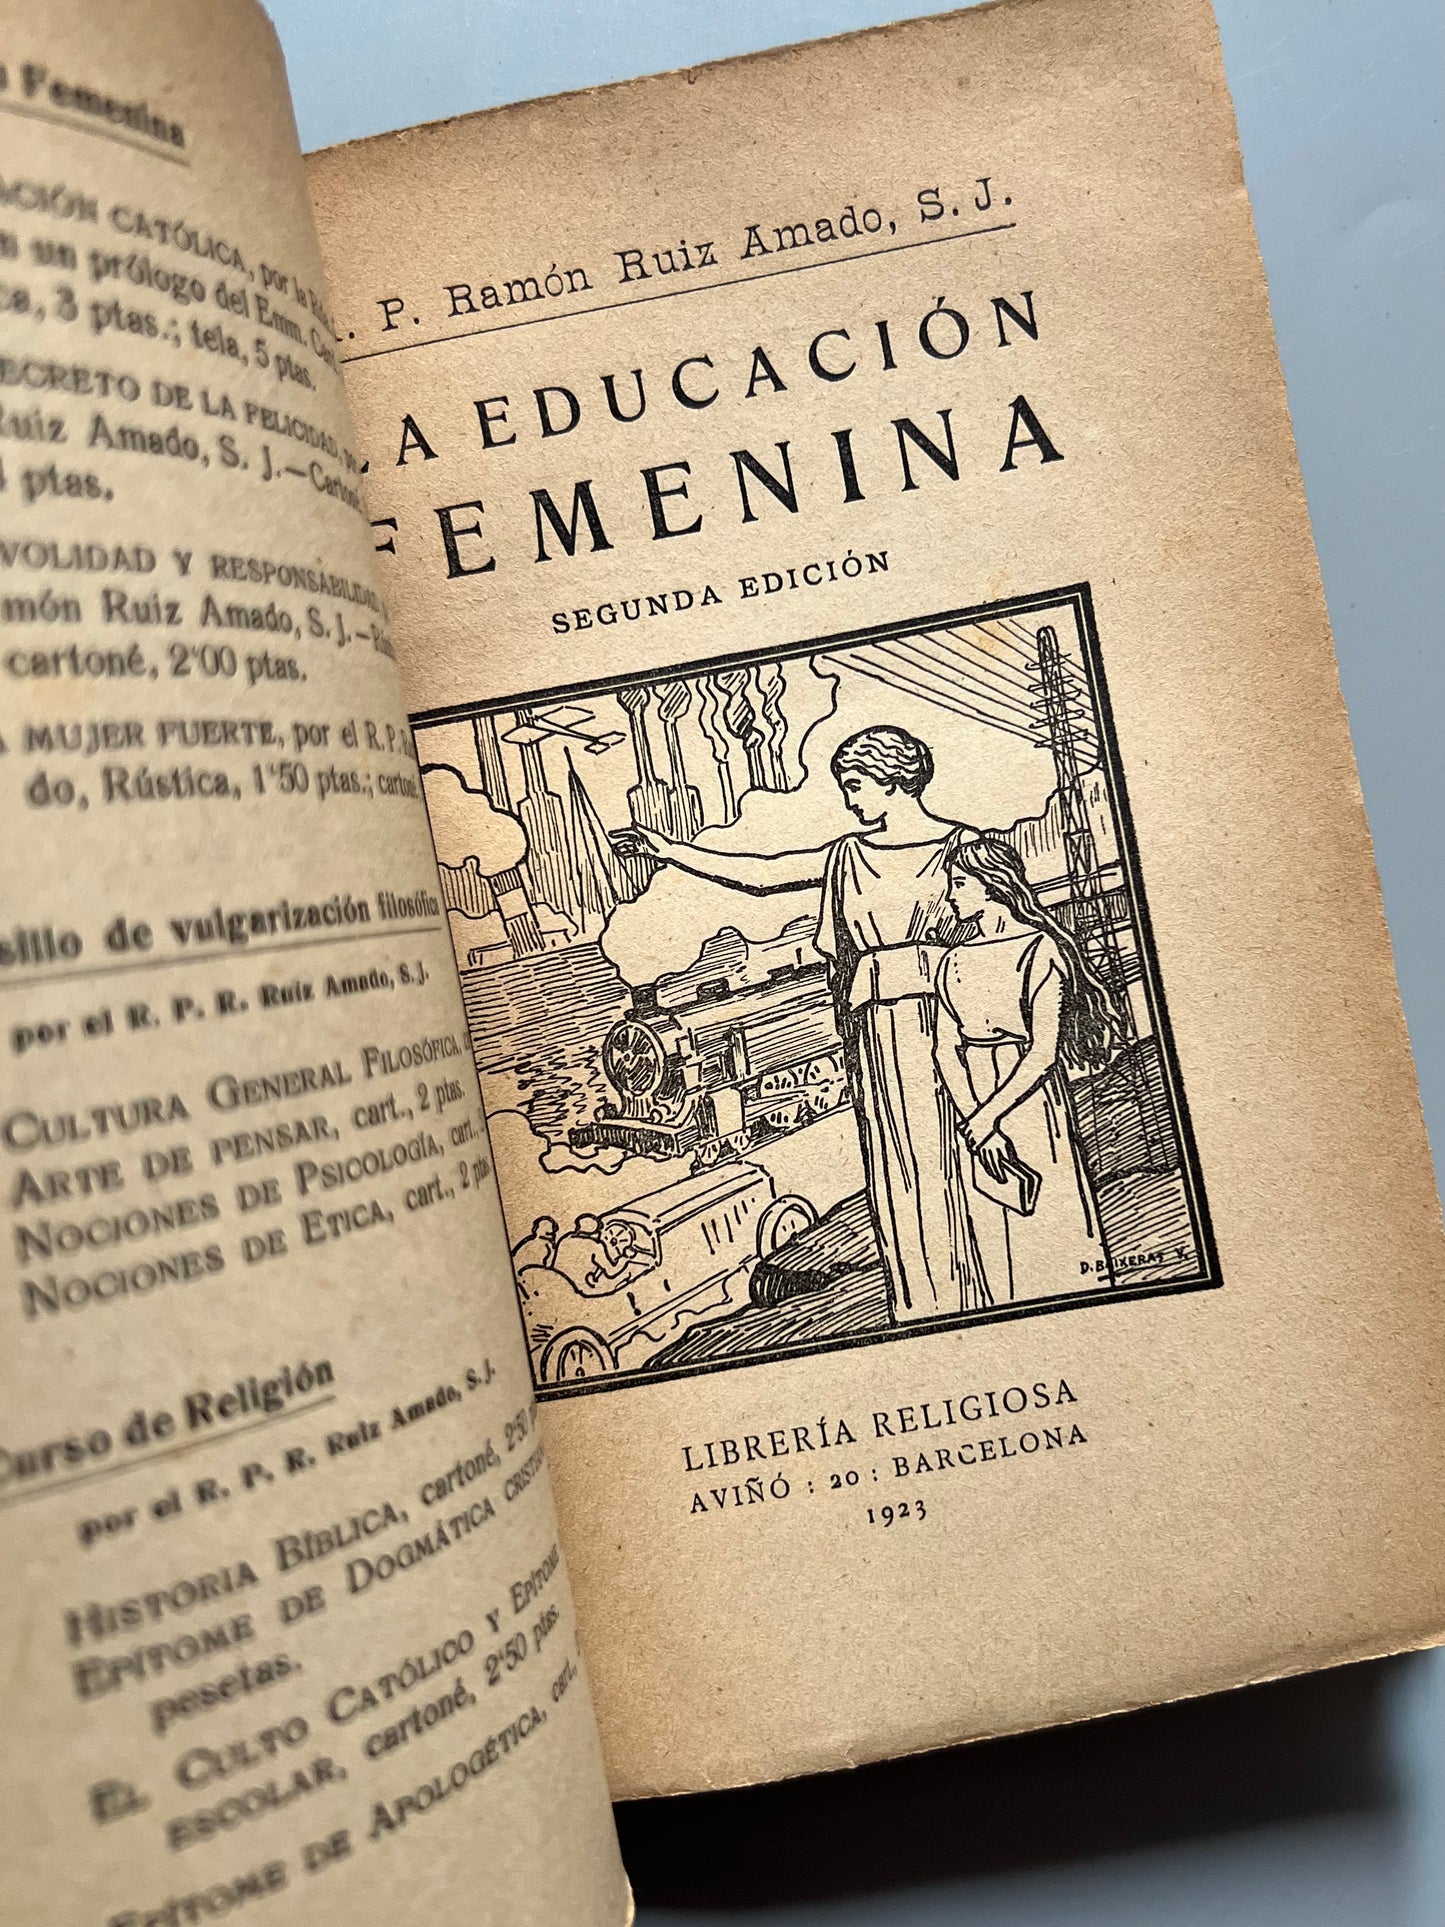 La educación femenina, R. P. Ramón Ruiz Amado - Librería Religiosa, 1923